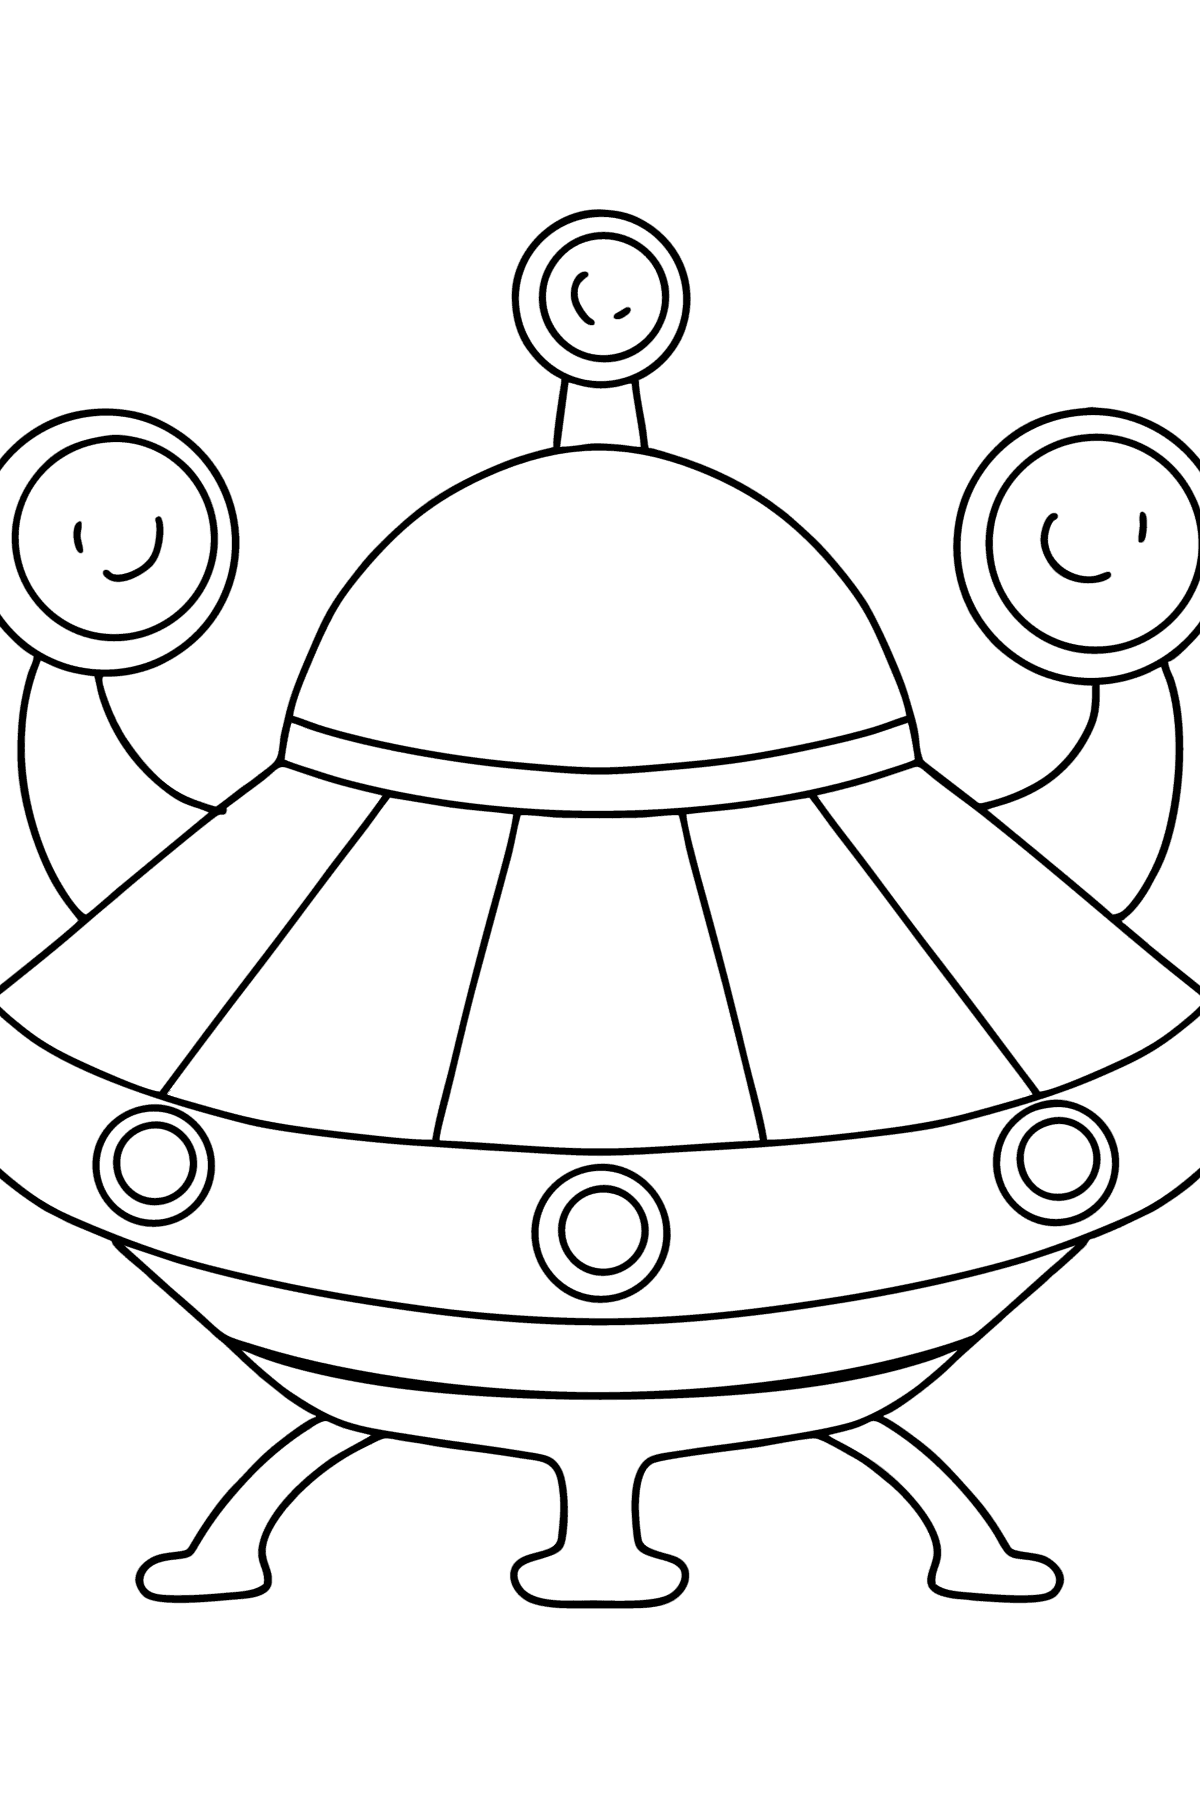 Раскраска - инопланетный космический корабль - Картинки для Детей